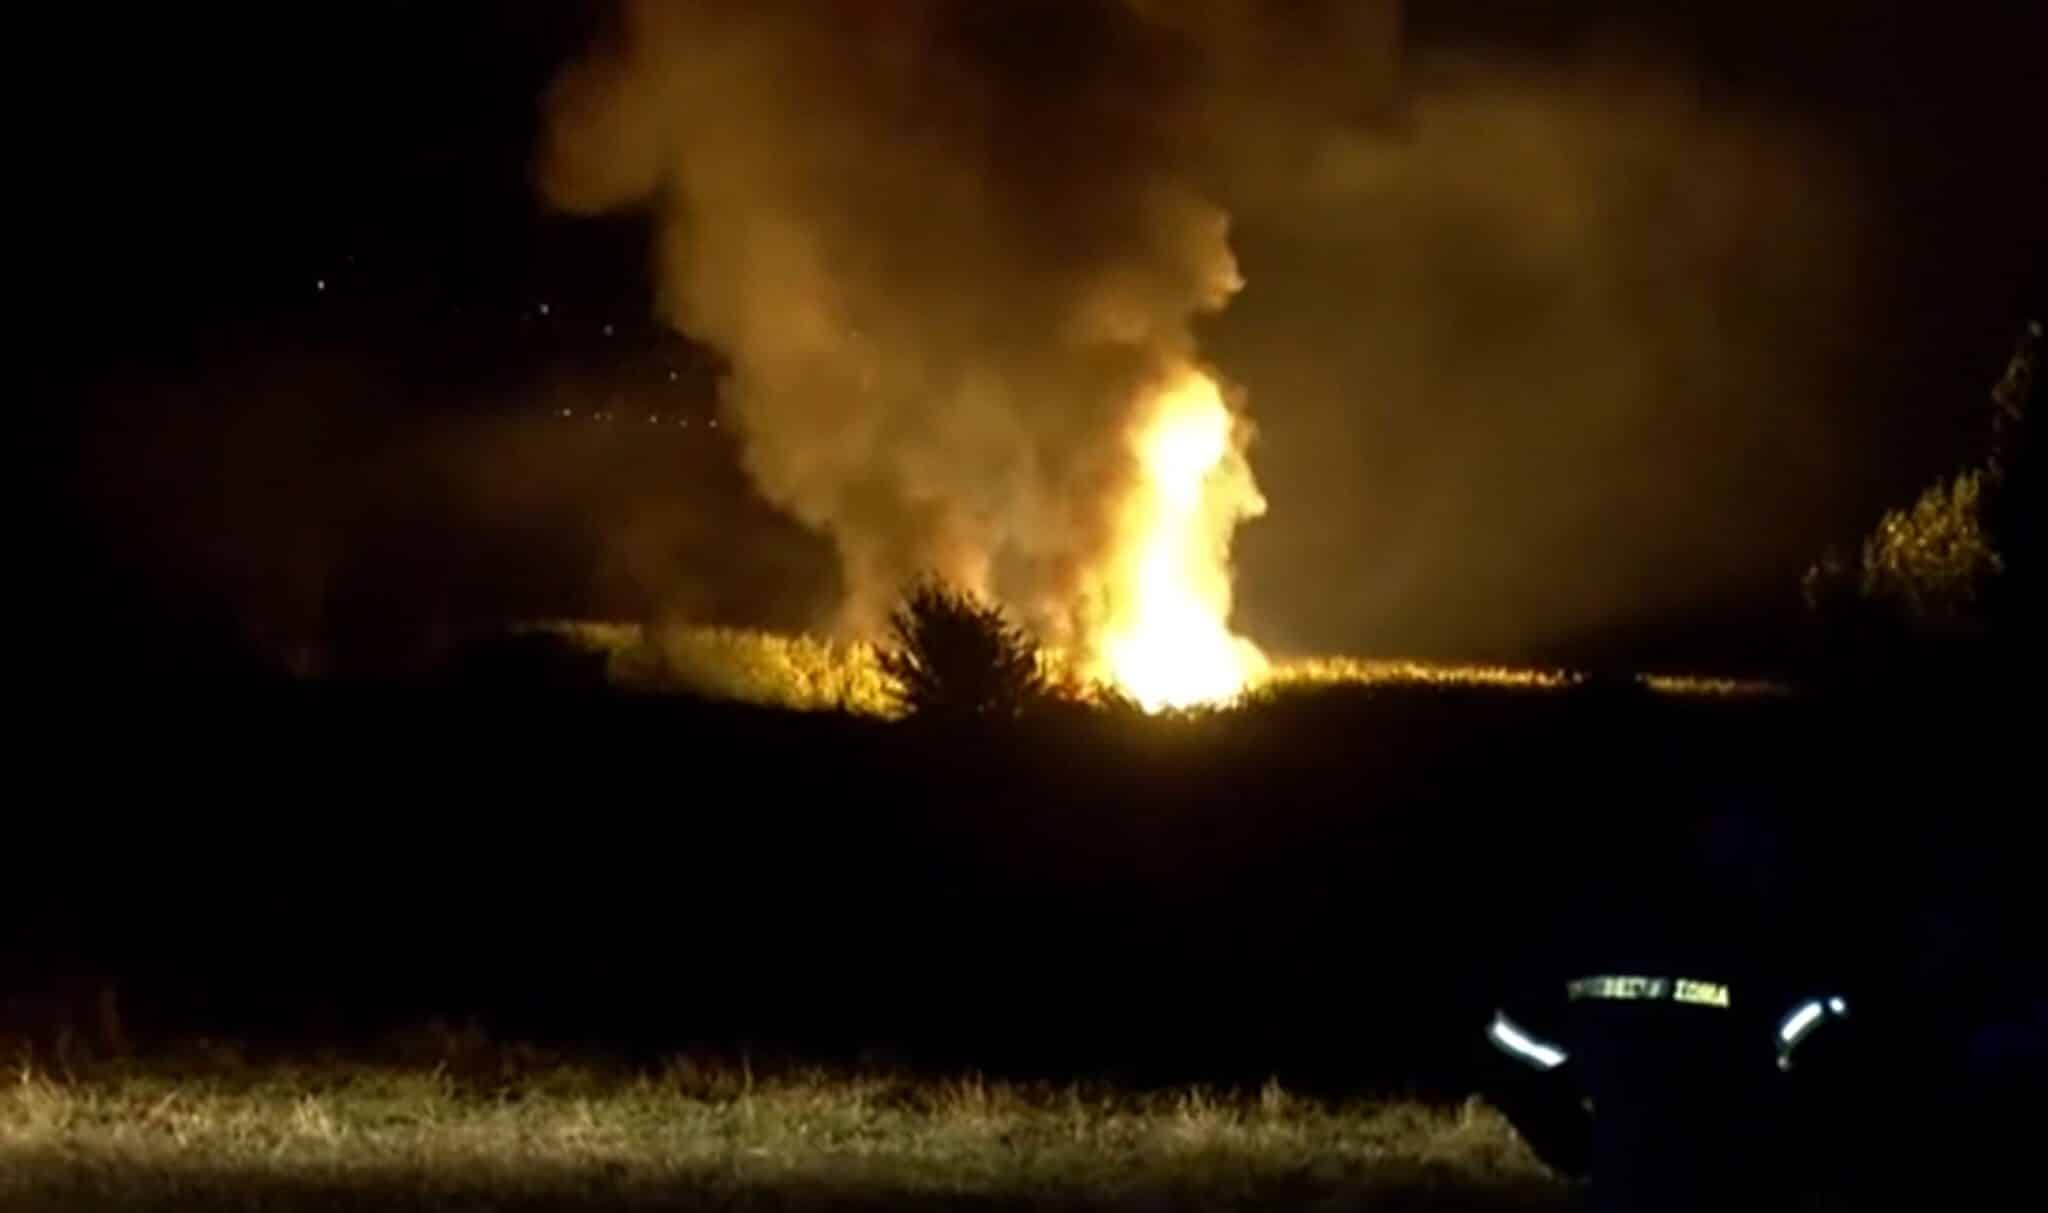 Los restos del avión arden tras estrellarse en Grecia